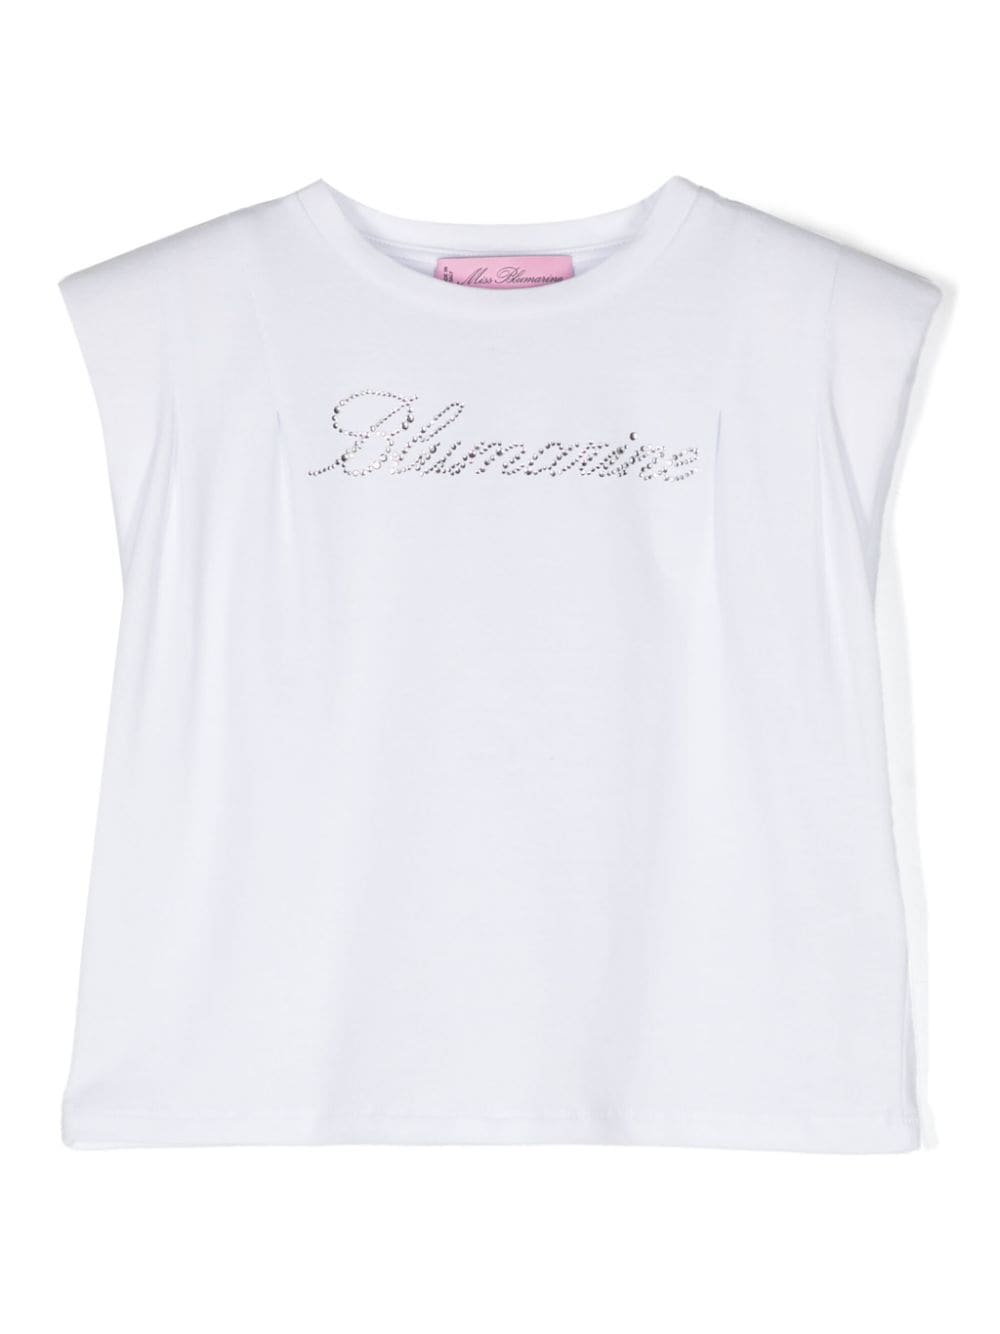 Miss Blumarine shoulder-pads tank top - White von Miss Blumarine